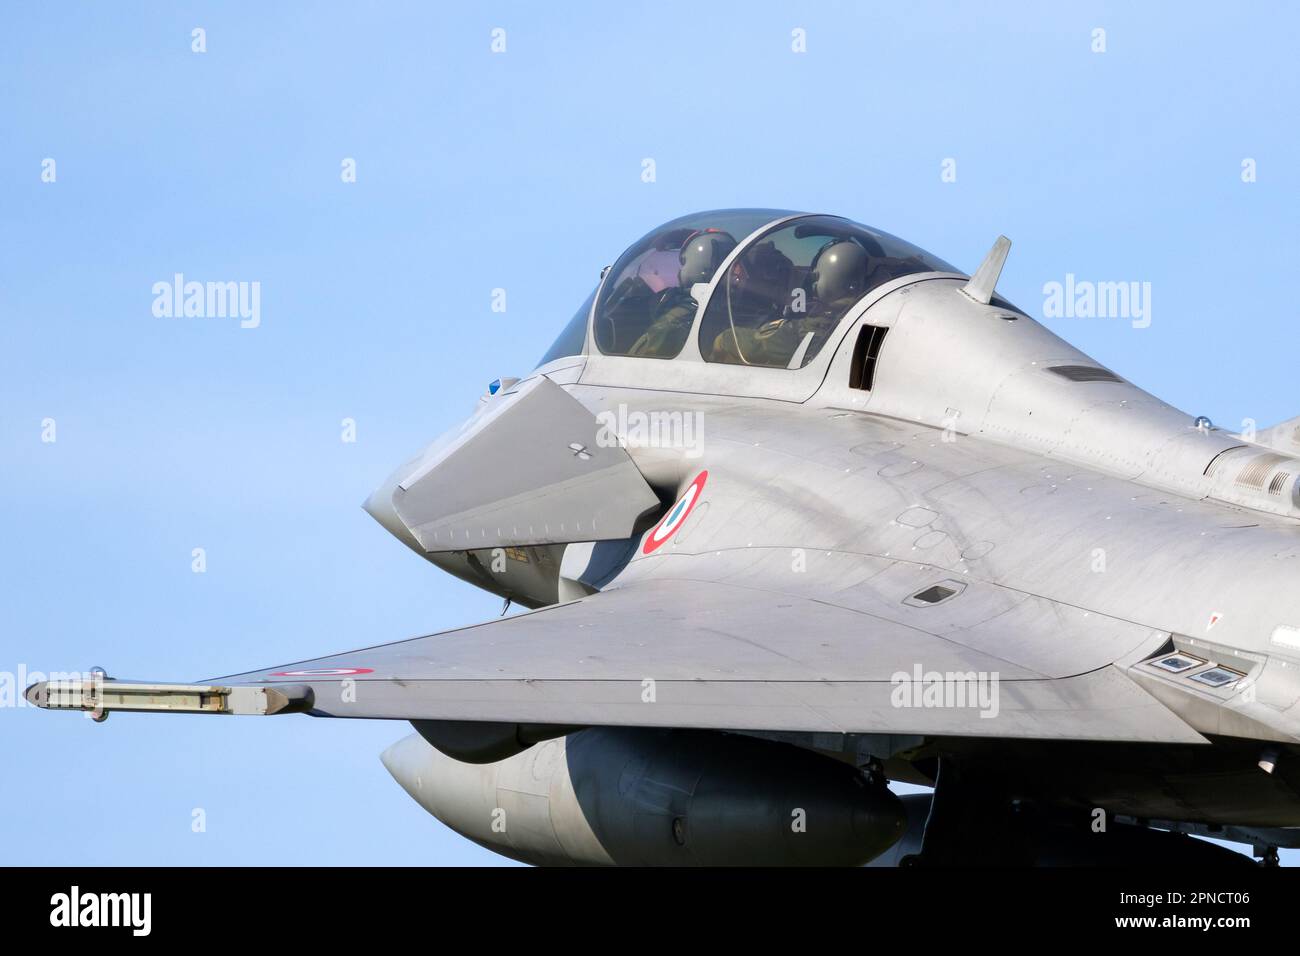 Avion de chasse Dassault Rafale de la Force aérienne française en vol pendant l'exercice Frison Flag. Leeuwarden, pays-Bas - 19 avril 2018 Banque D'Images